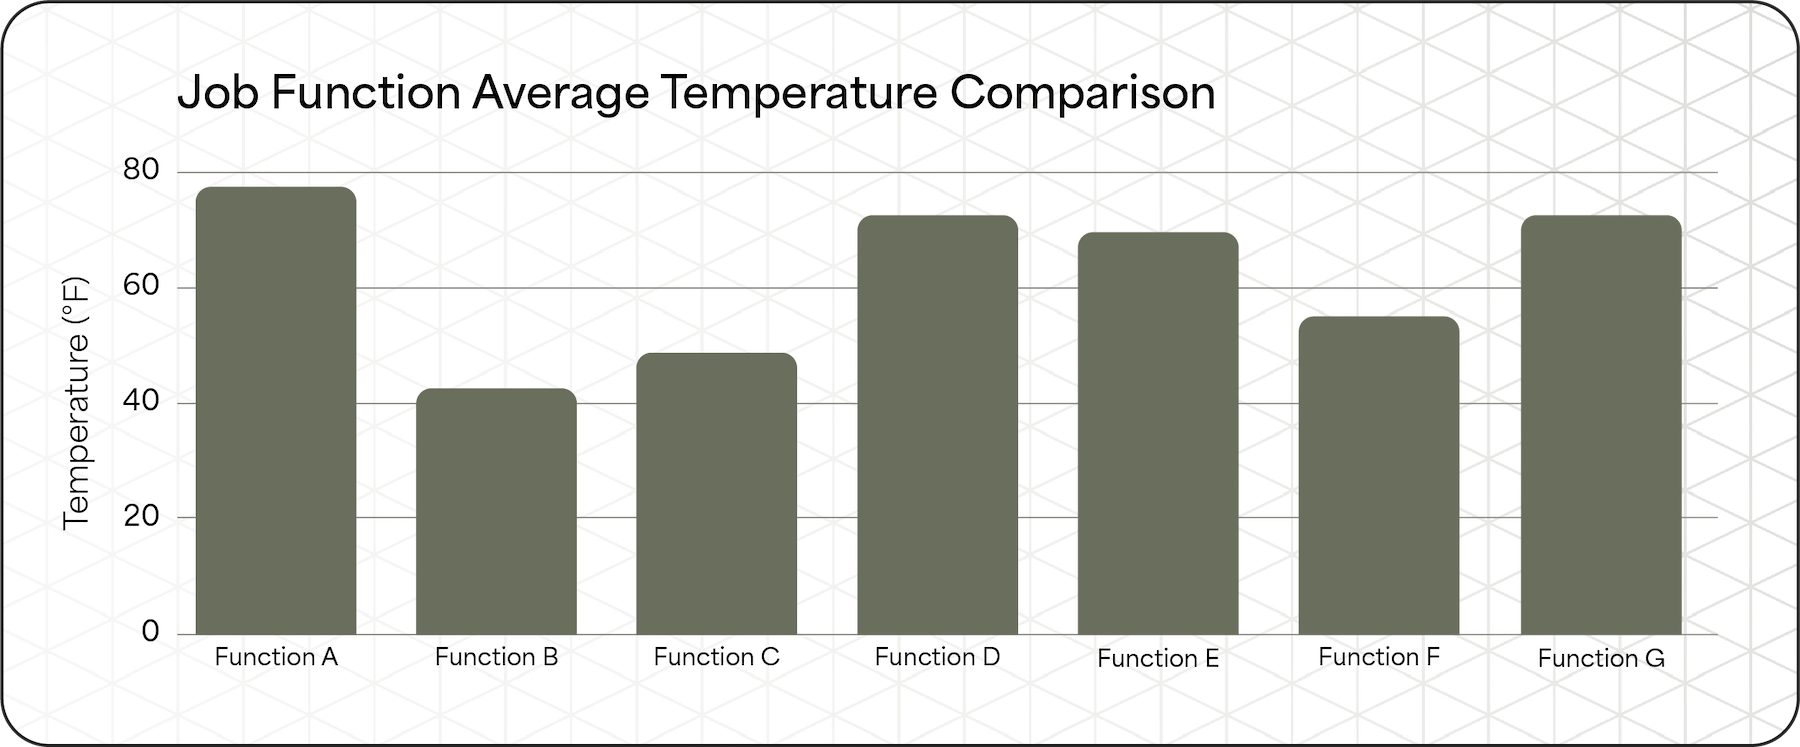 Job Function Average Temperature Comparison